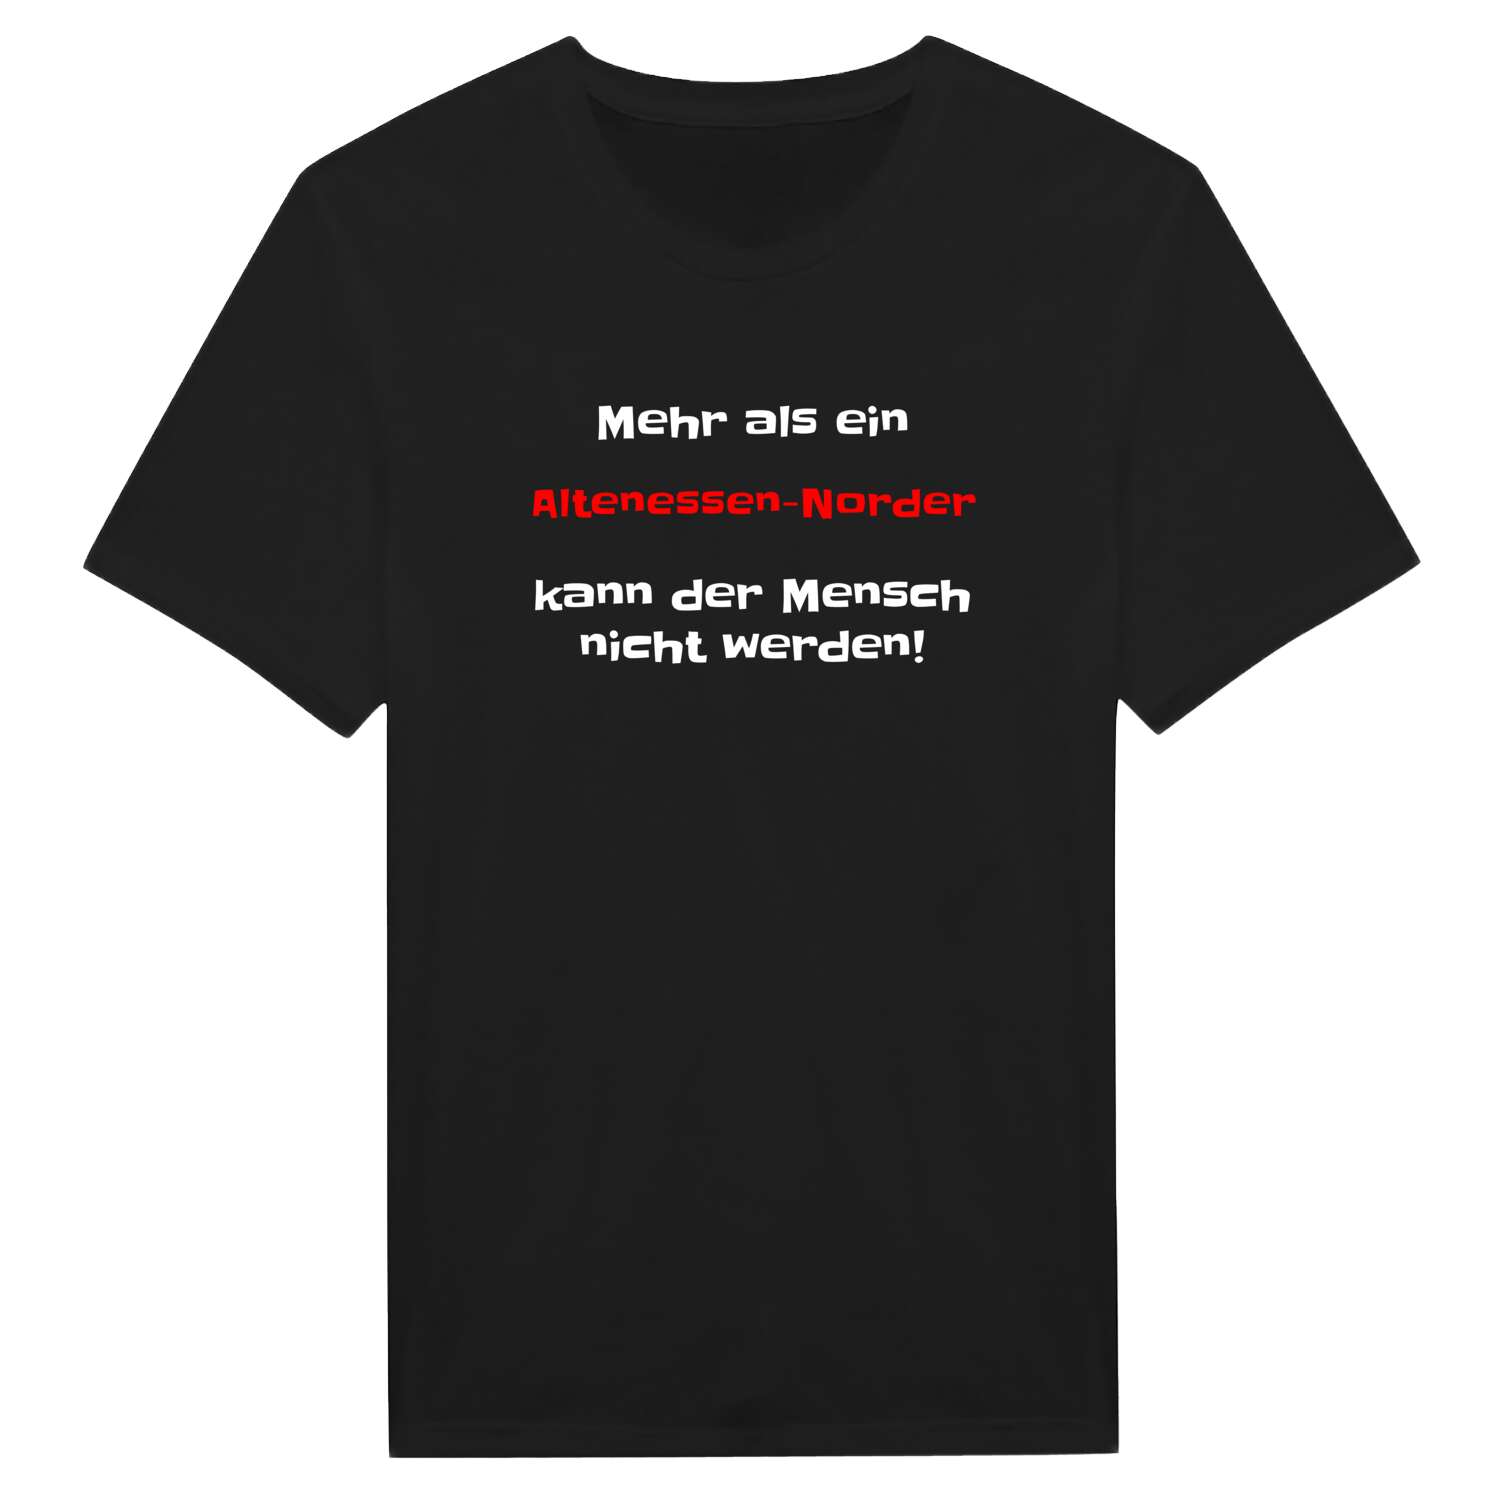 Altenessen-Nord T-Shirt »Mehr als ein«